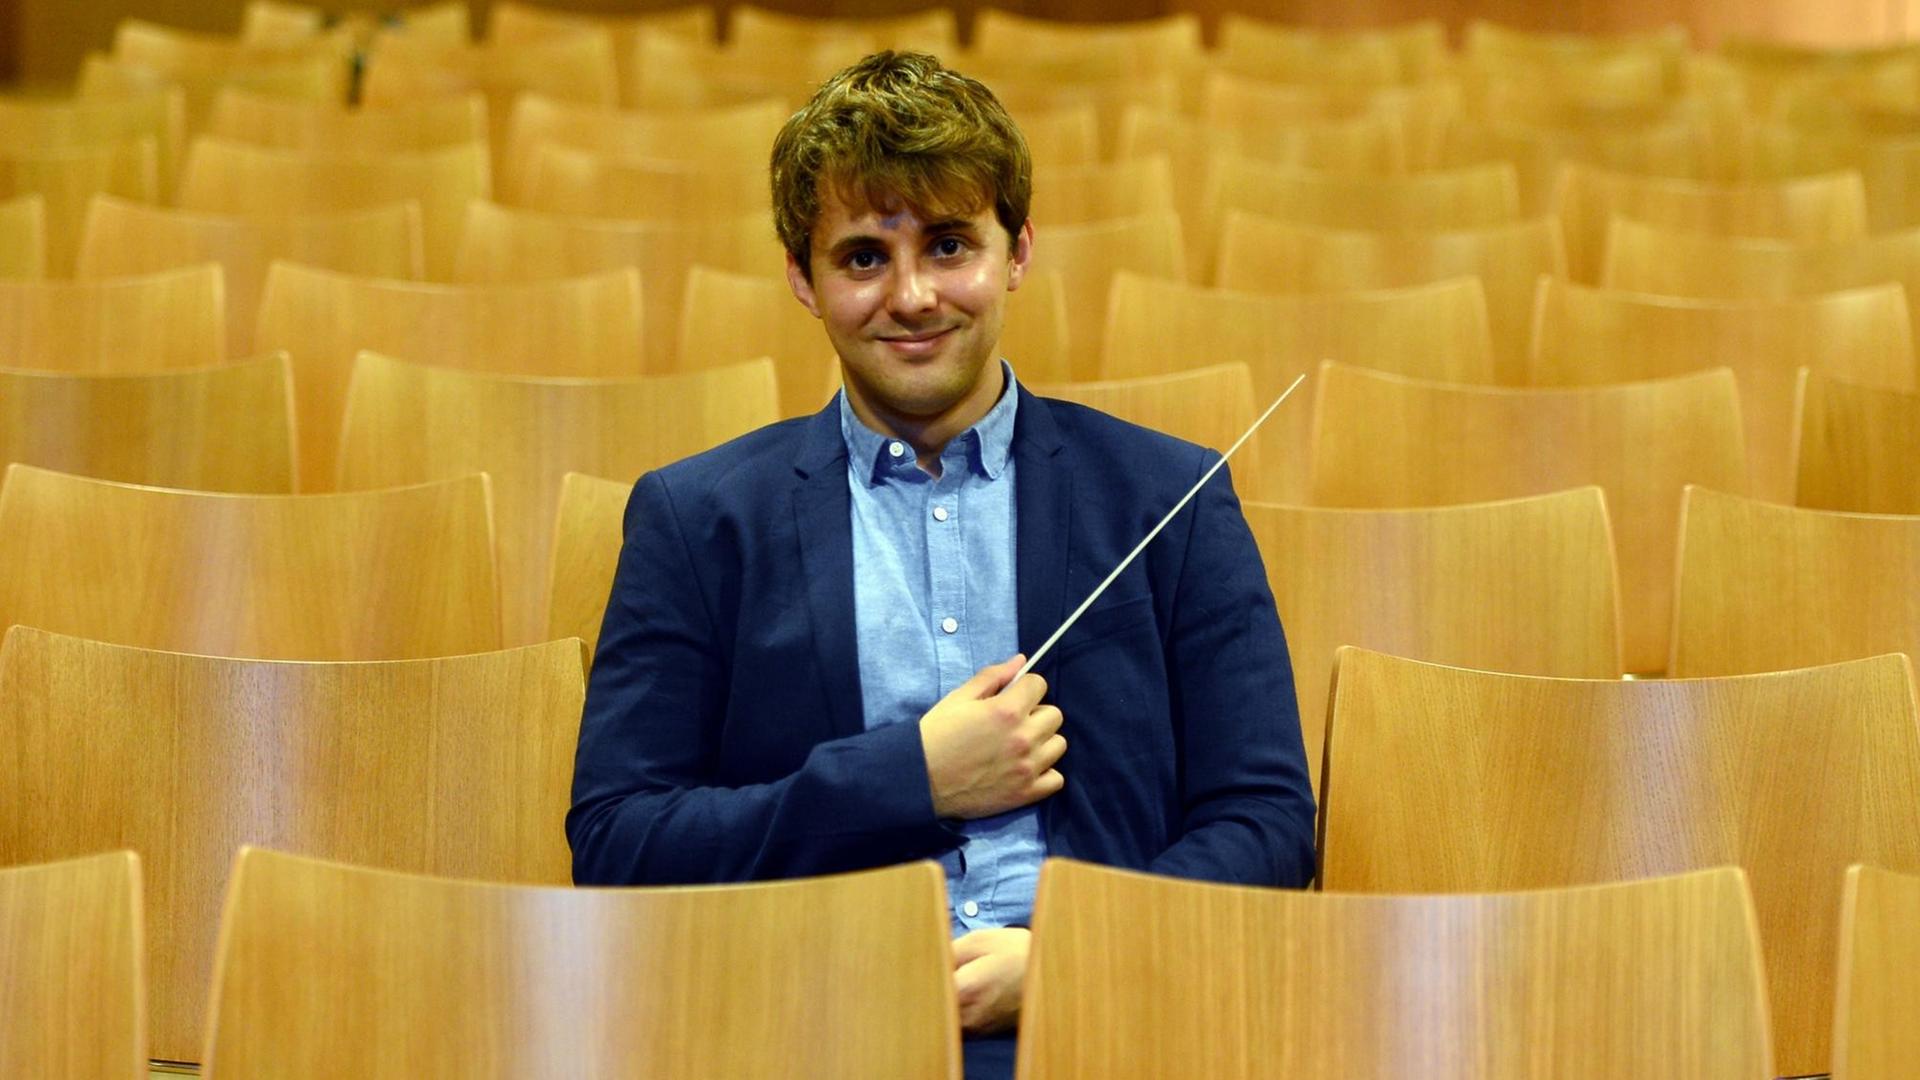 30.09.2019, Nordrhein-Westfalen, Köln: Der Nachwuchsdirigent Julio García Vico sitzt in der Kölner Philharmonie.